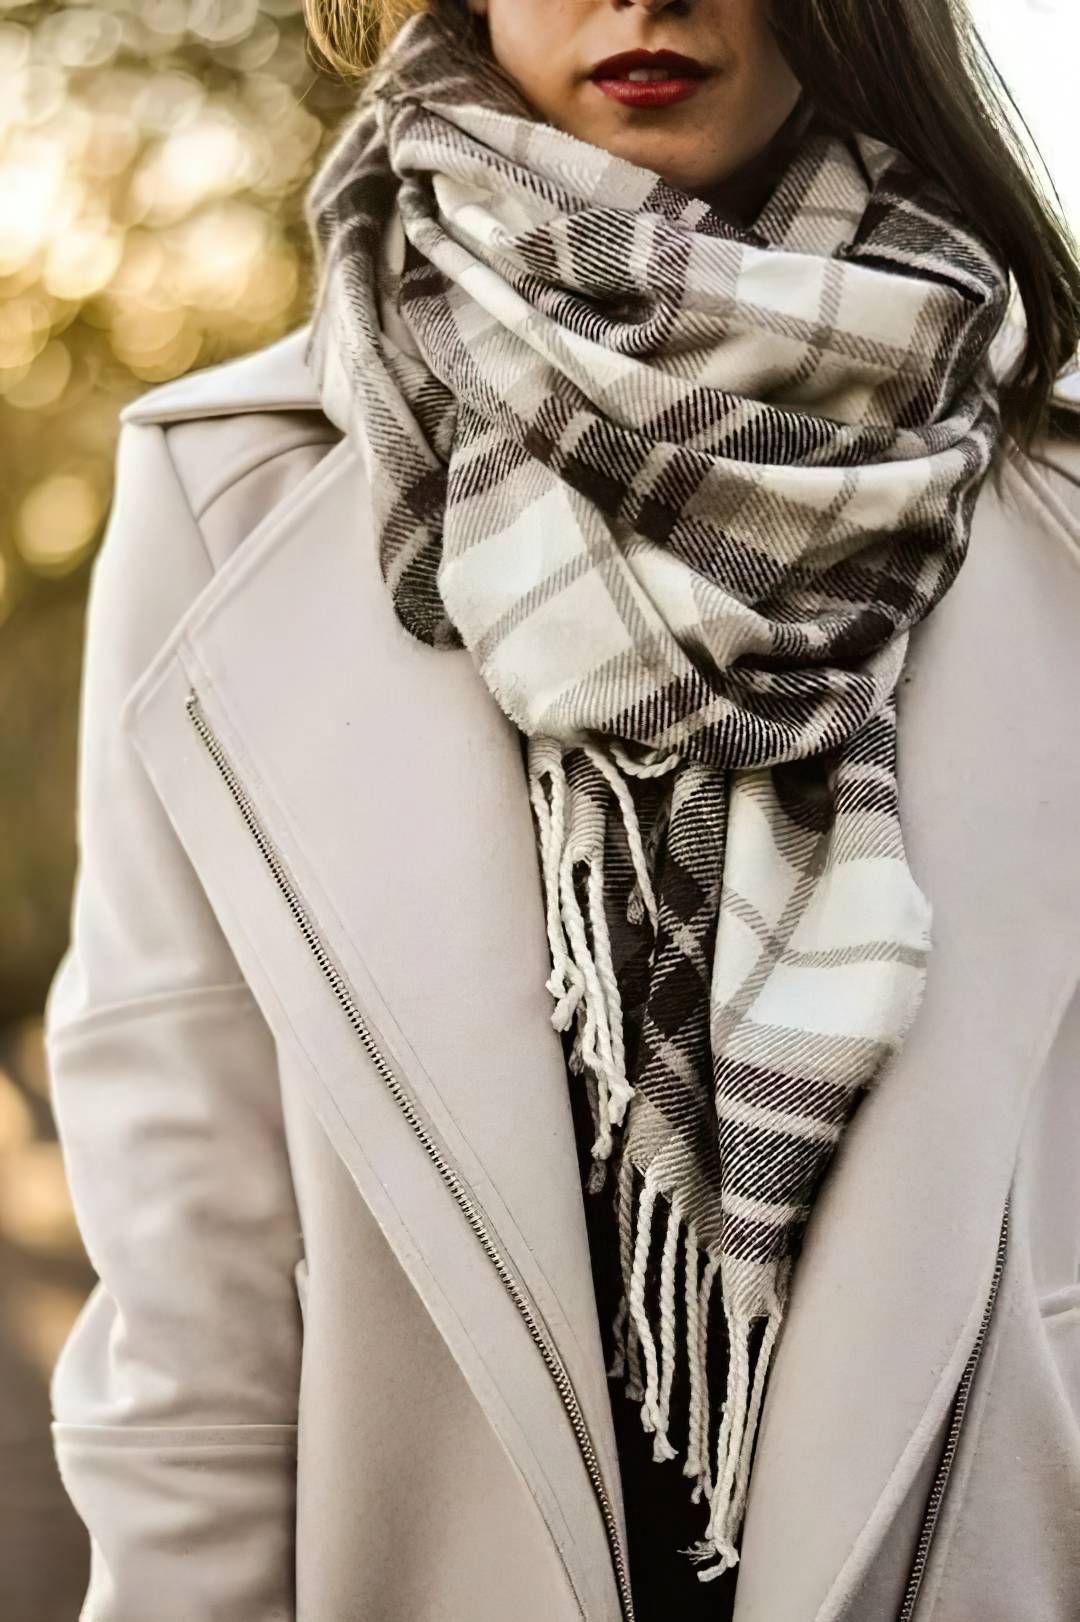 Как выбрать шарф: зимний, летний и шарф-украшение